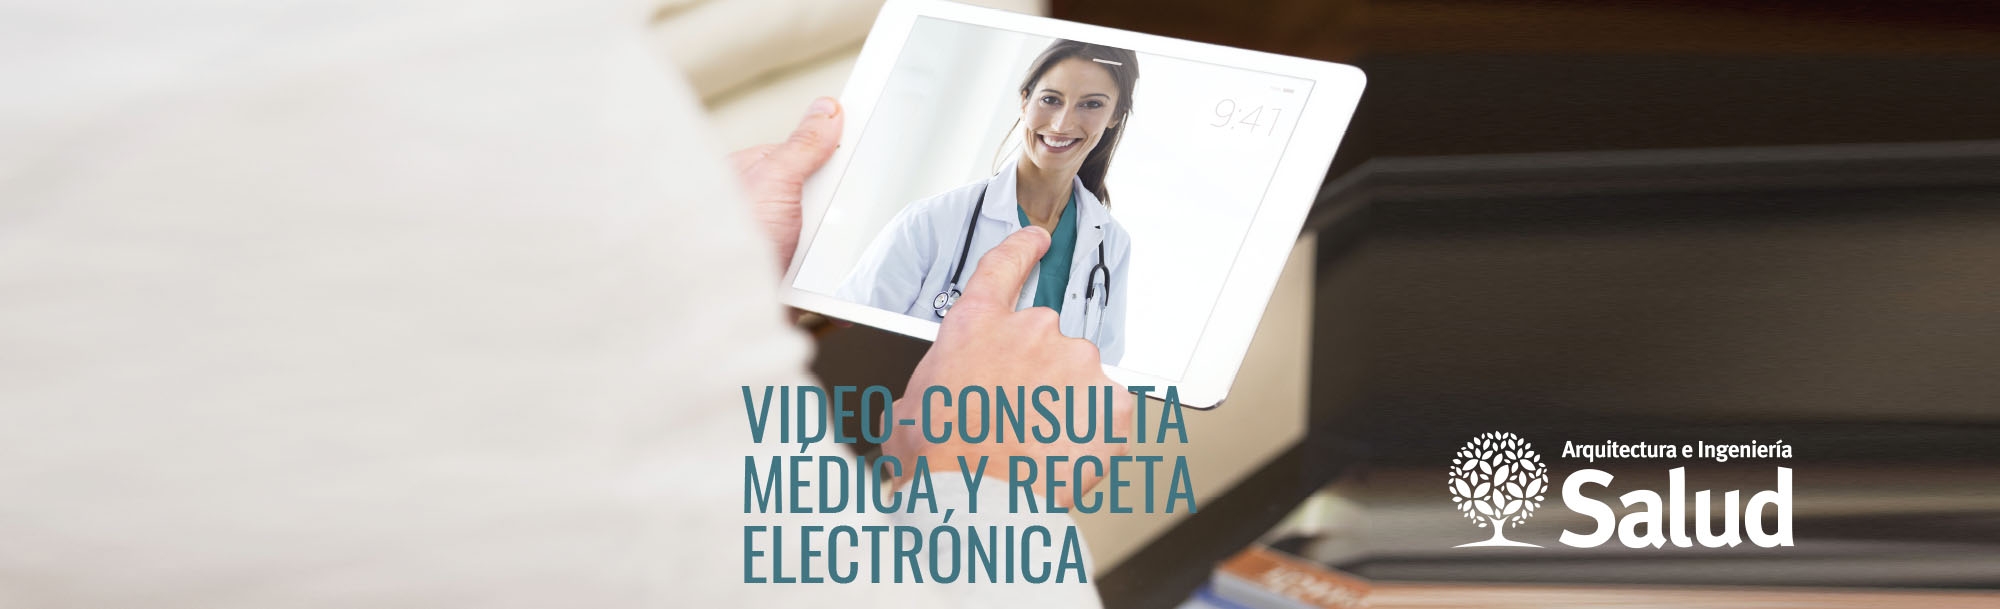 Video-consulta médica y receta electrónica